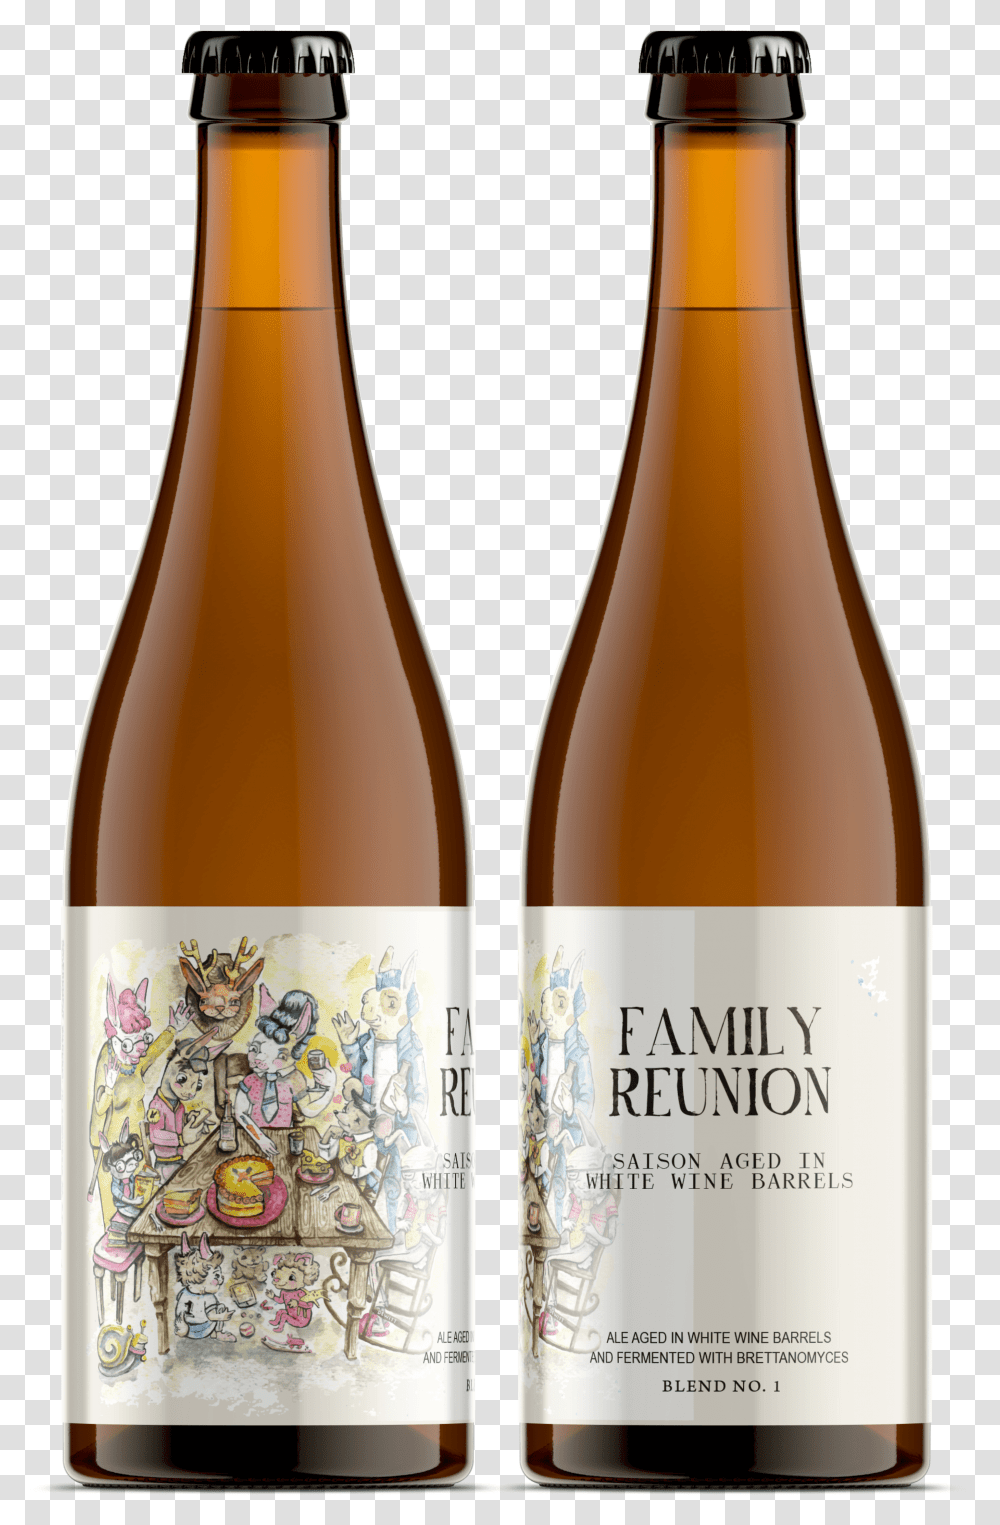 Family Reunion Bottles Beer, Alcohol, Beverage, Drink, Beer Bottle Transparent Png